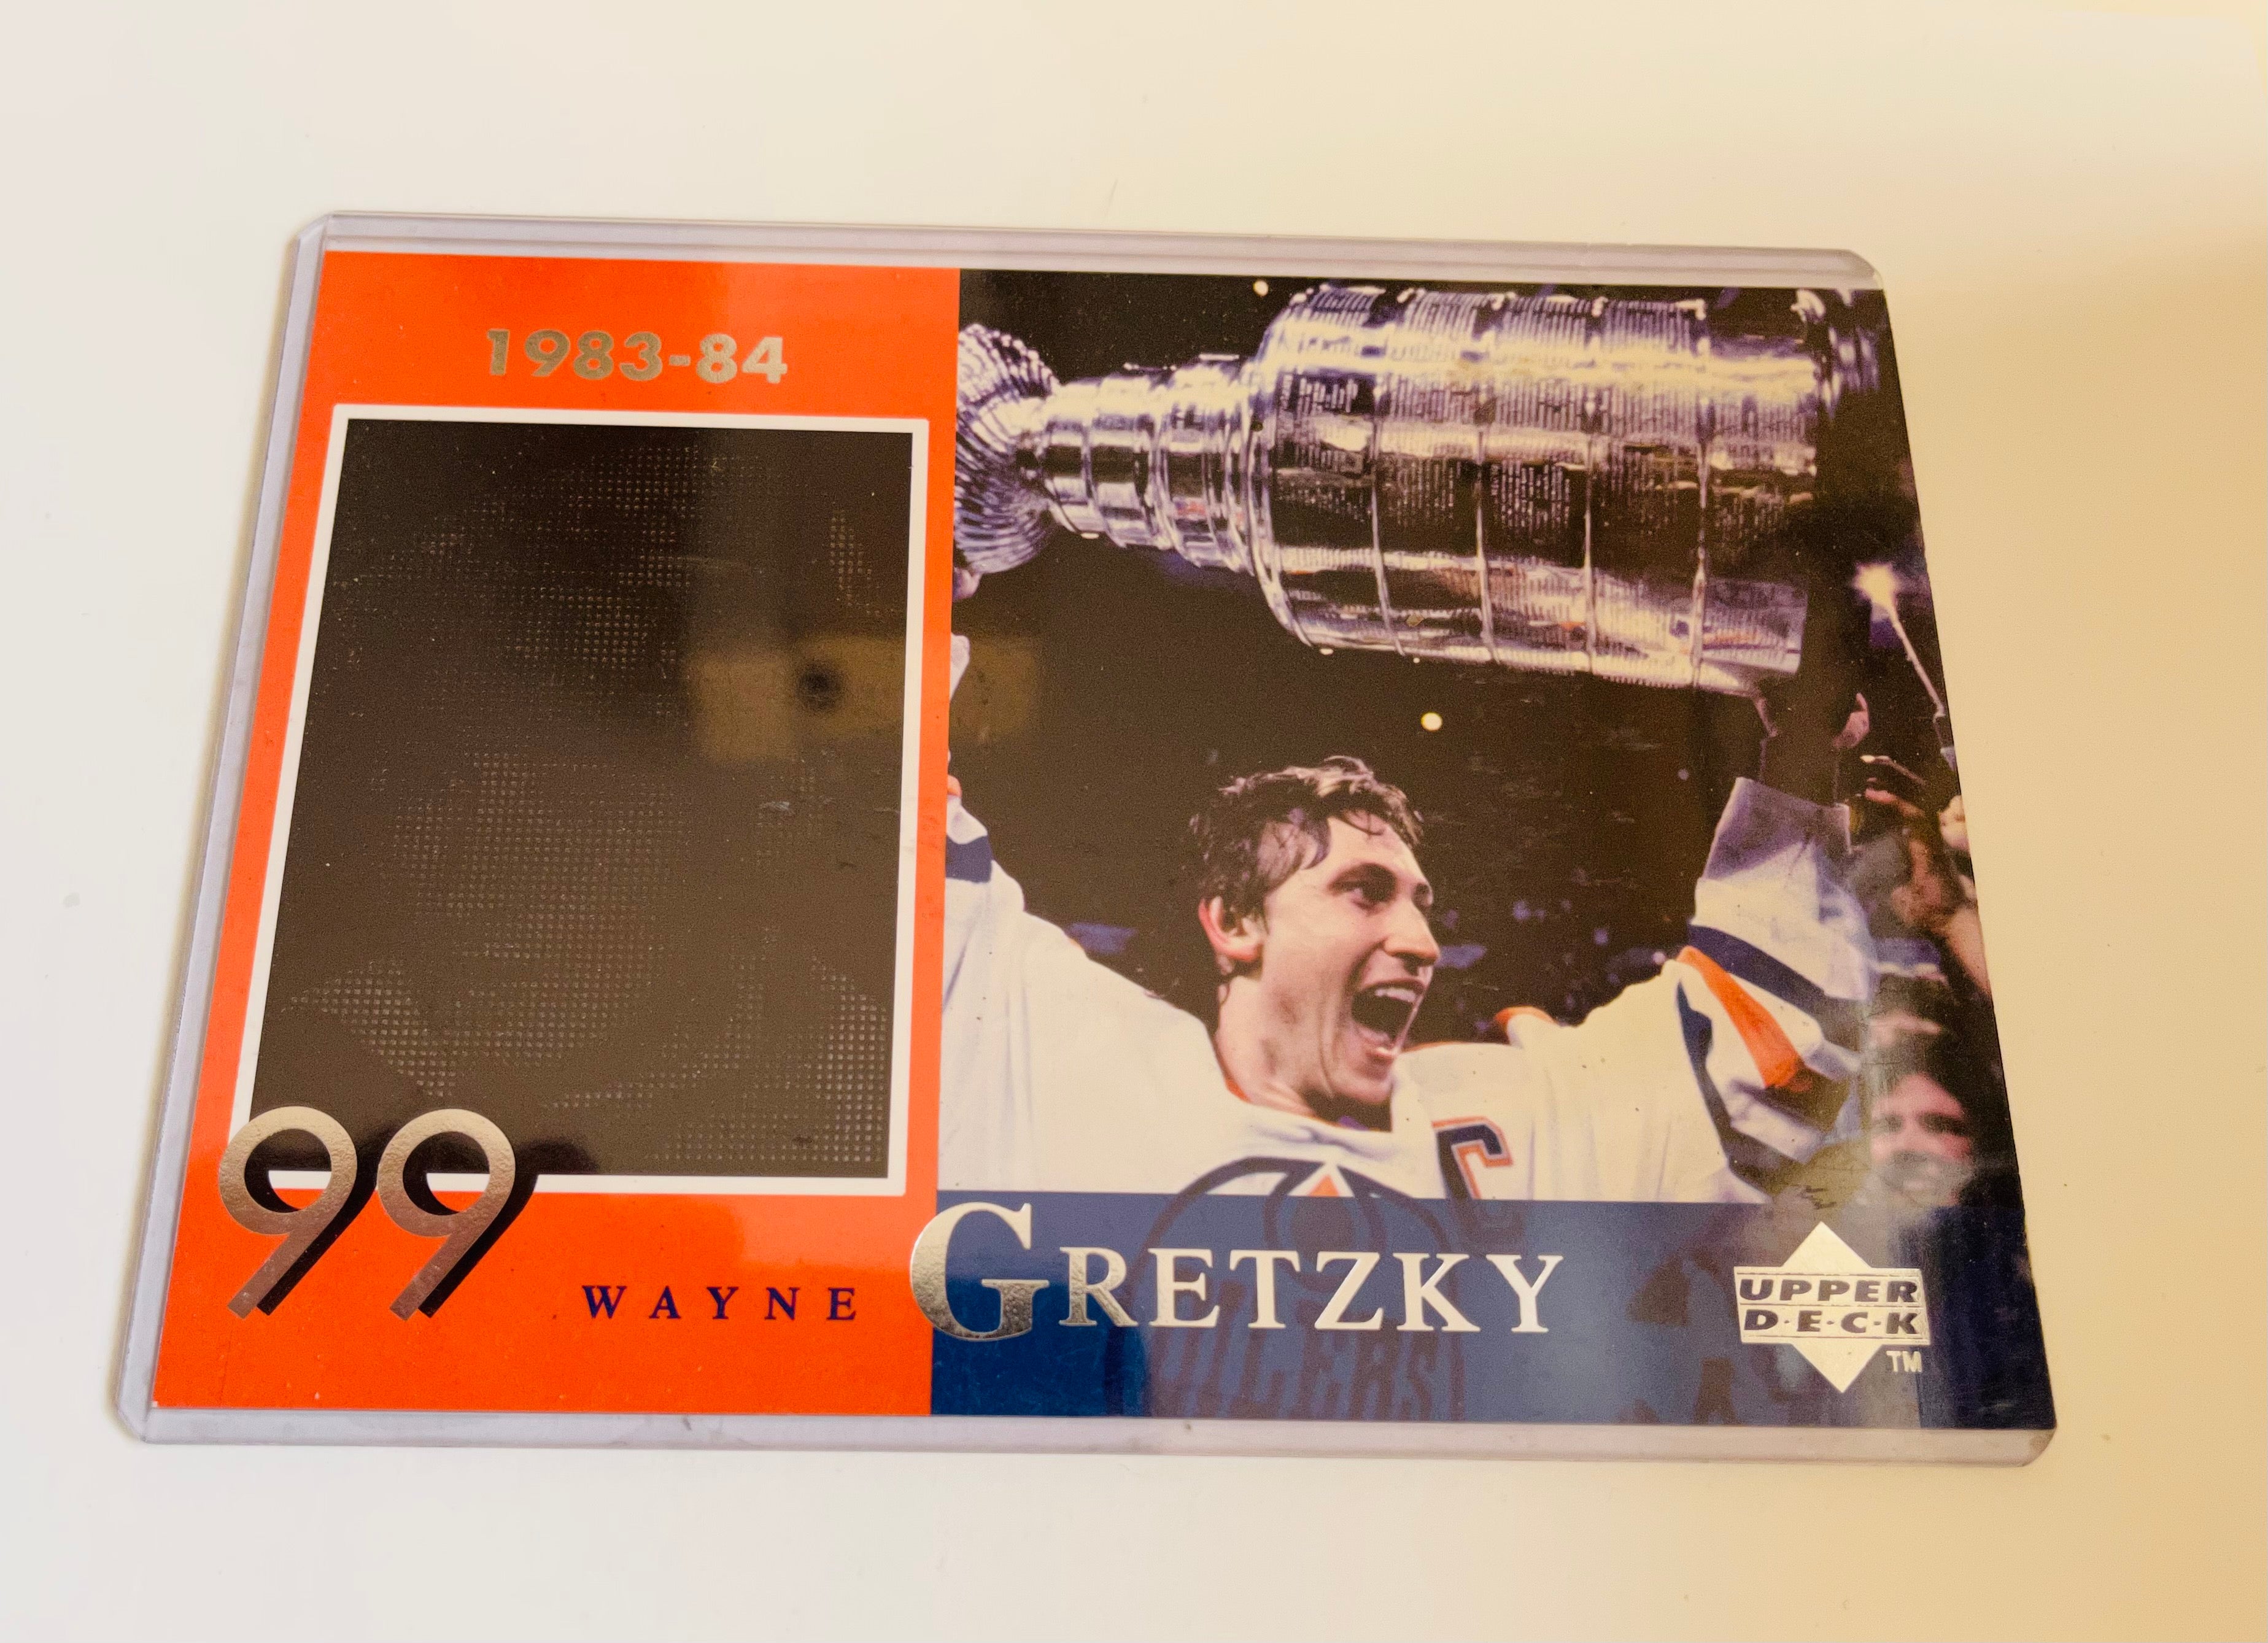 Wayne Gretzky large McDonald’s Upperdeck hockey insert card 1998